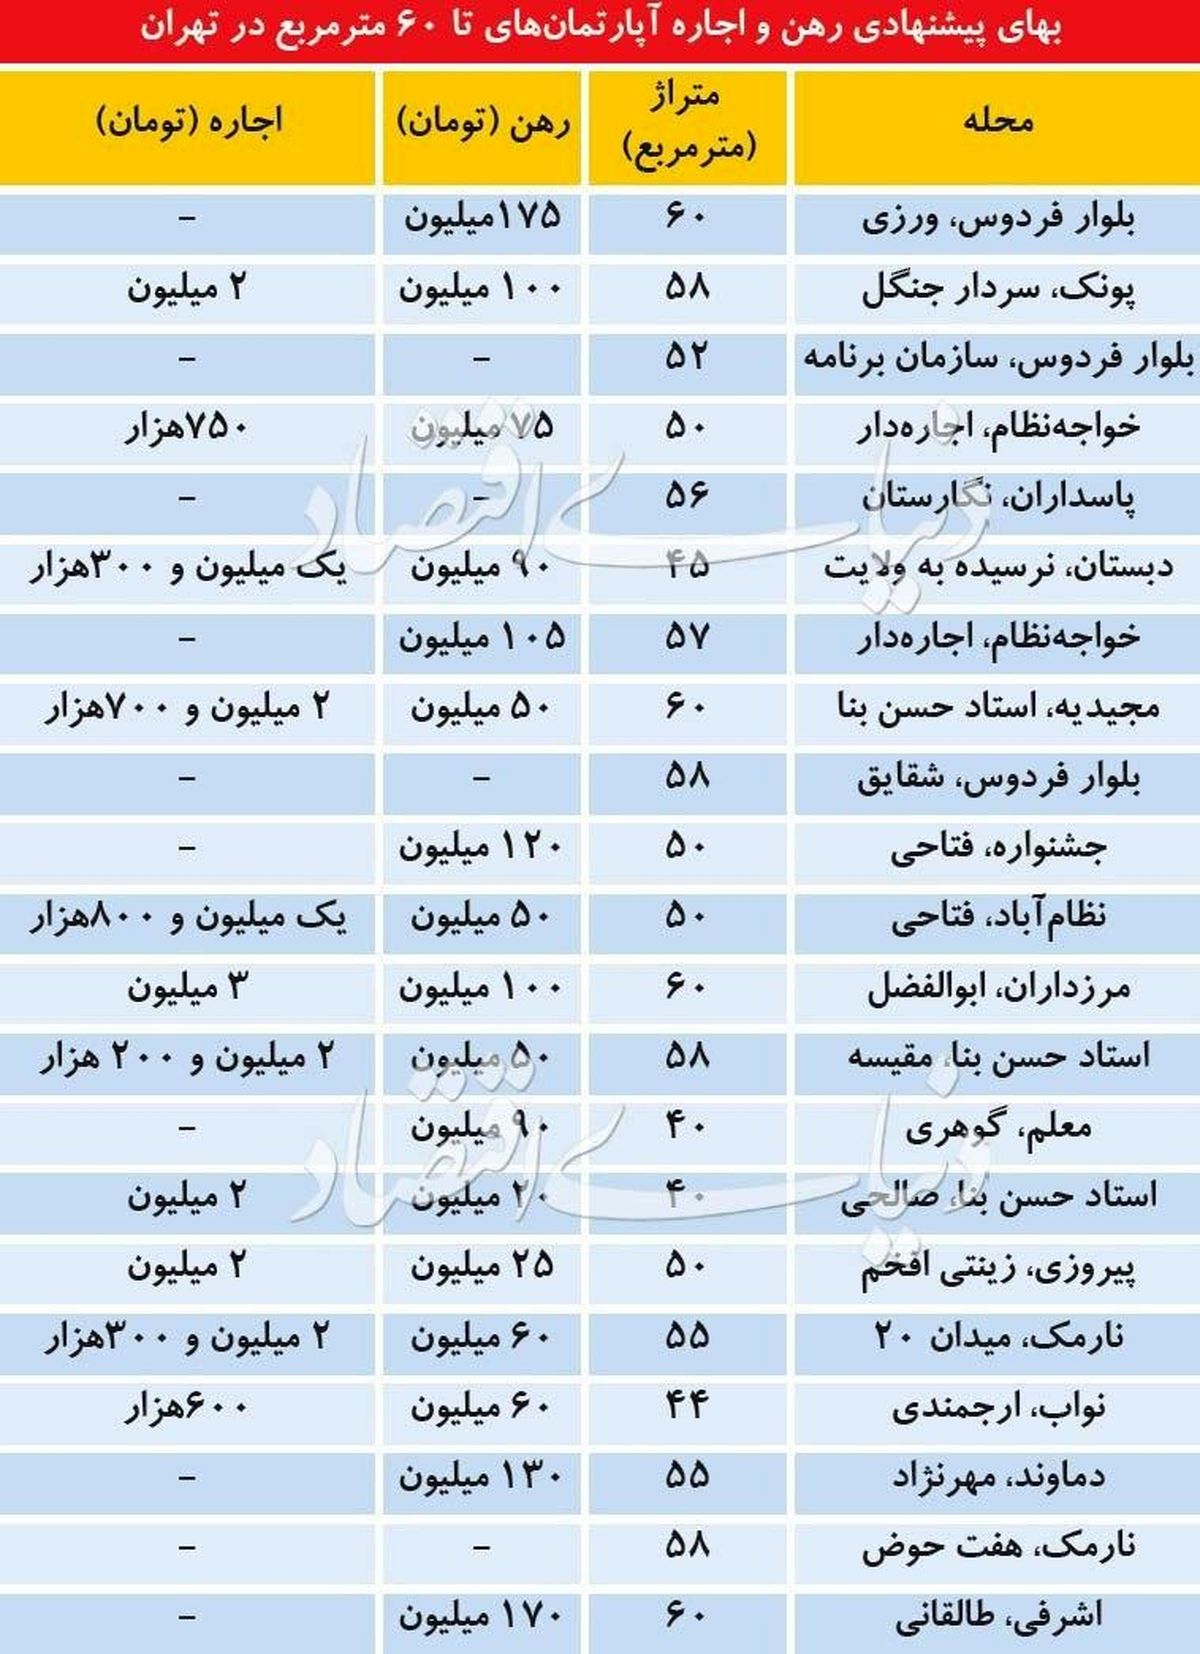 قیمت پیشنهادی رهن و اجاره آپارتمان های تا ۶۰ متر مربع در تهران + جدول